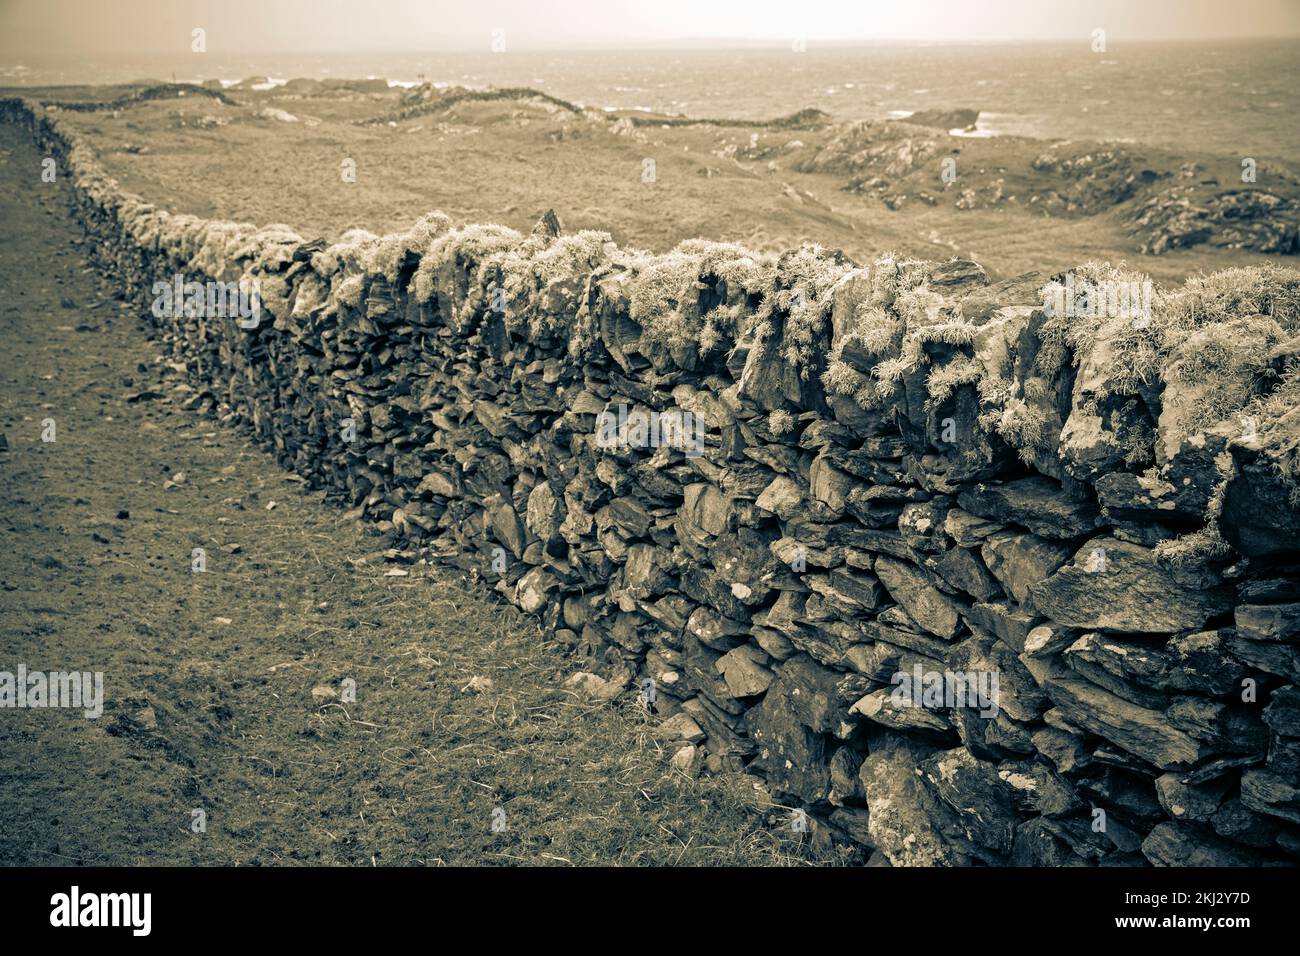 Irlande, Inishbofin, une île sur les îles les plus à l'ouest au large de la côte irlandaise, murs en pierre sèche Banque D'Images